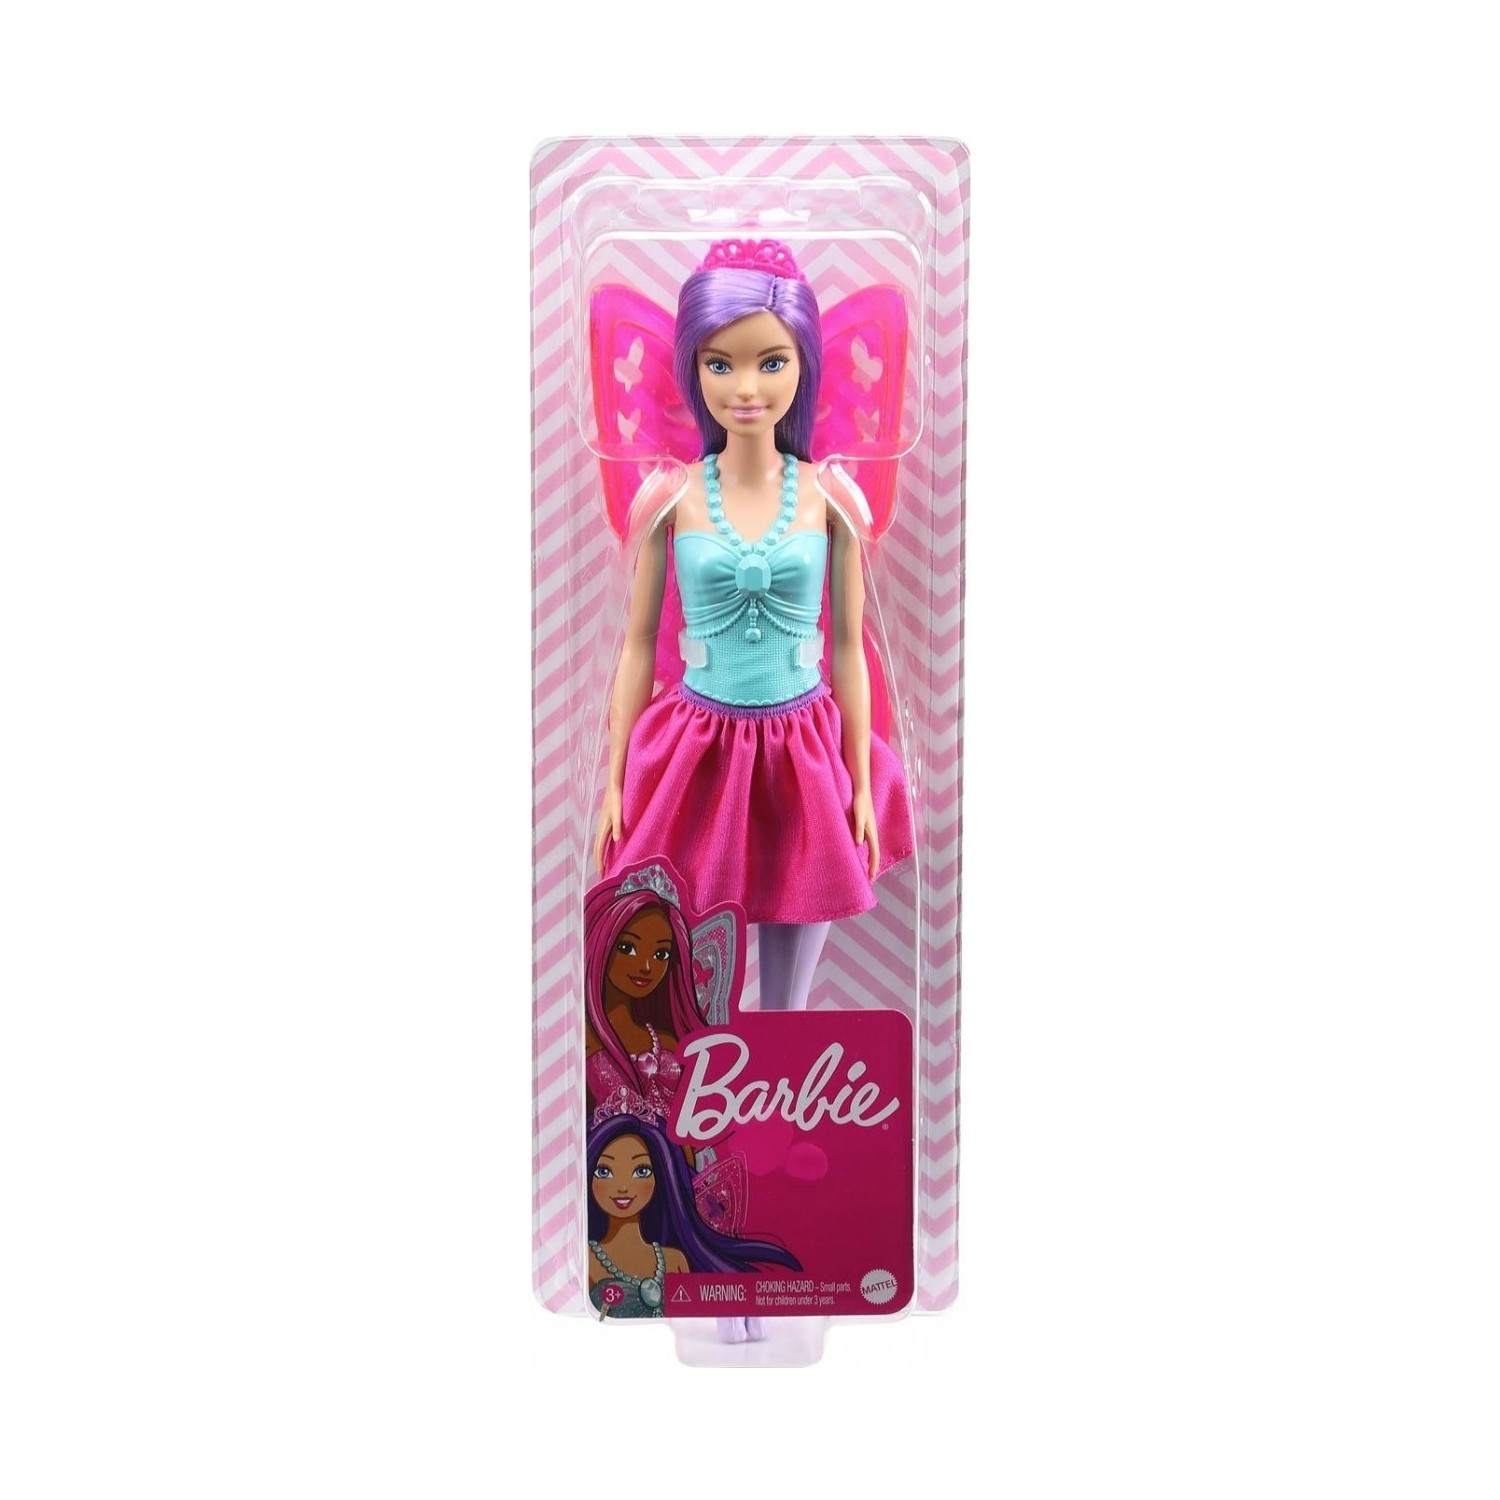 Кукла Barbie Dreamtopia Ballerina Doll кукла barbie dreamtopia princess doll and accessories gjk51